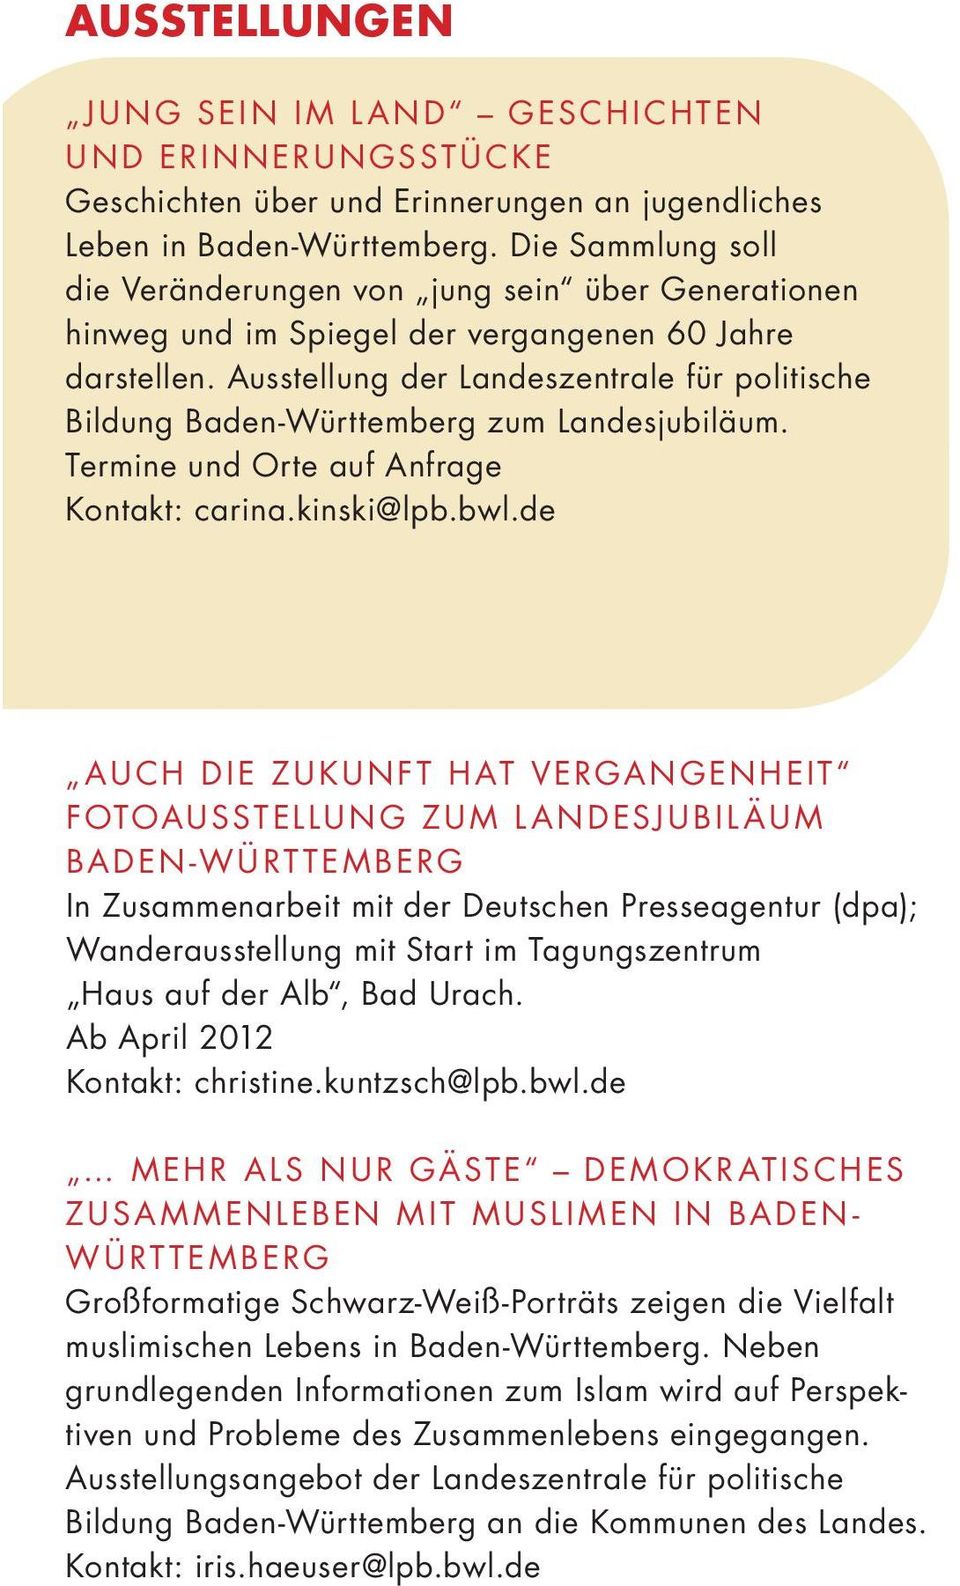 Ausstellung der Landeszentrale für politische Bildung Baden-Württemberg zum Landesjubiläum. Termine und Orte auf Anfrage Kontakt: carina.kinski@lpb.bwl.